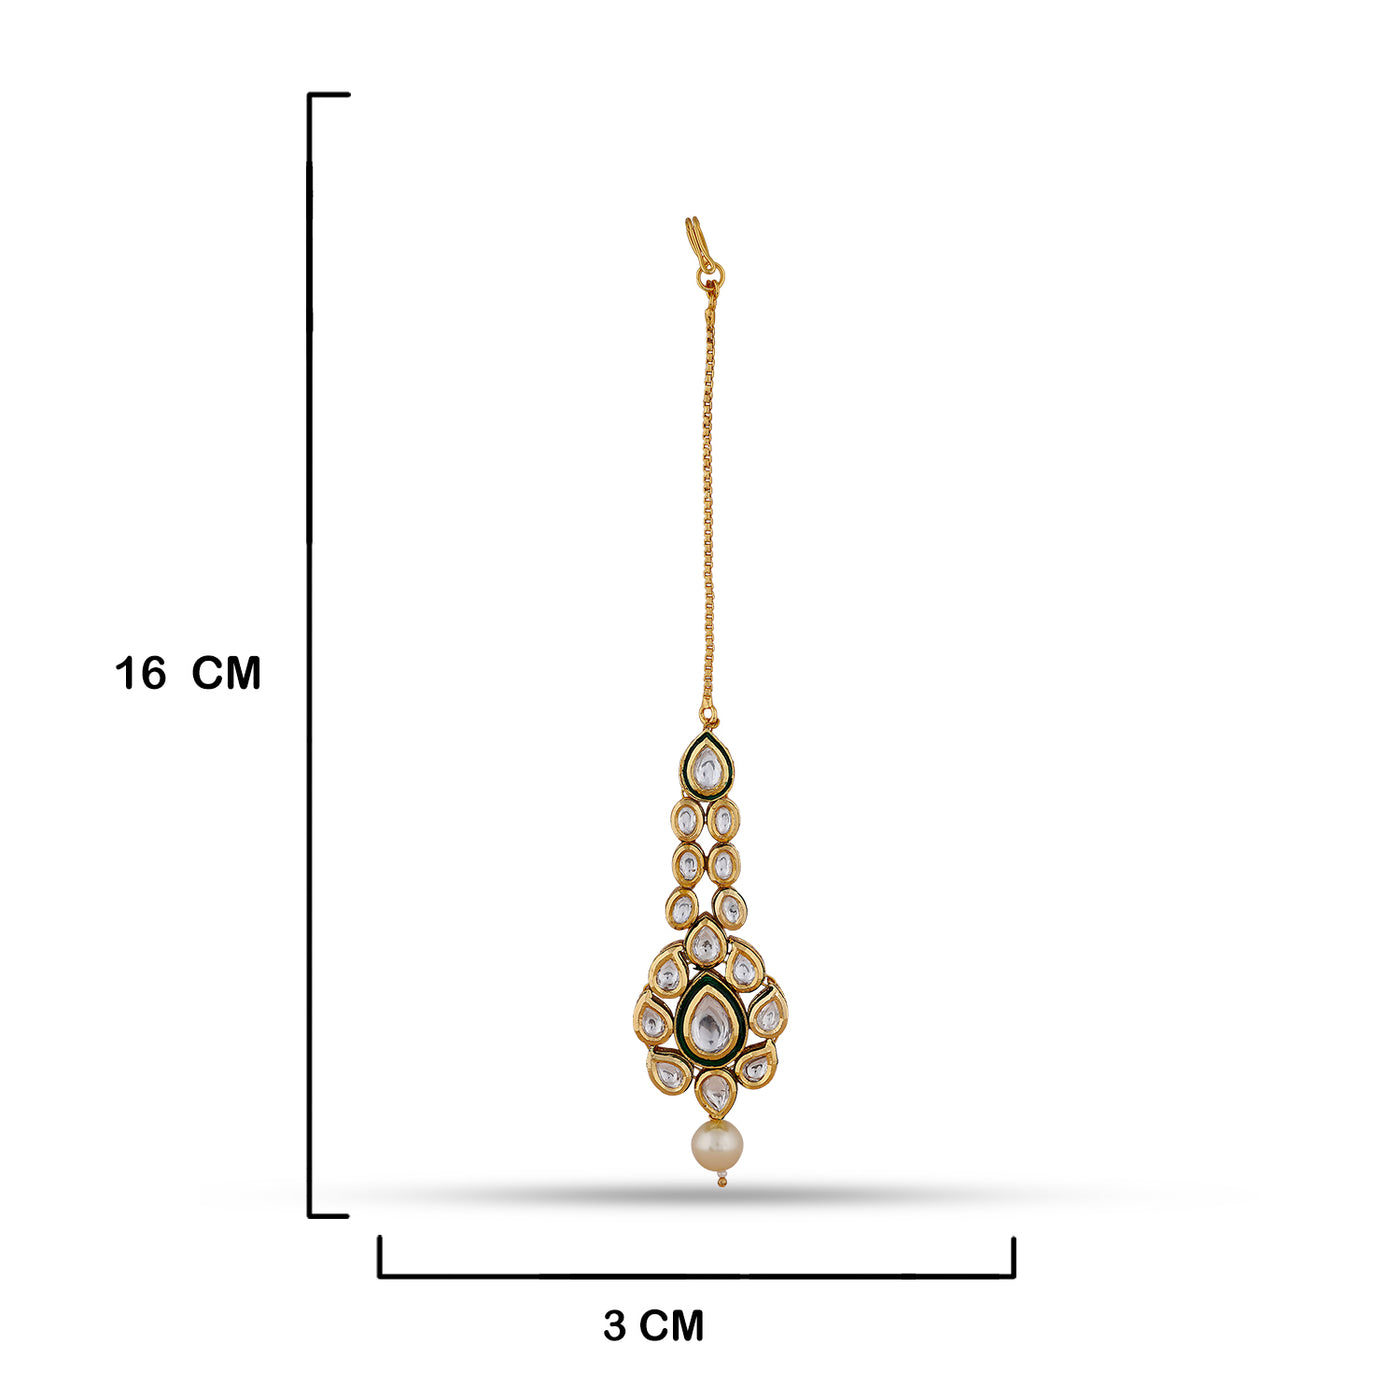 Kundan Polki Crystal Pearled Maang Tikka with measurements in cm. 16cm by 3cm.